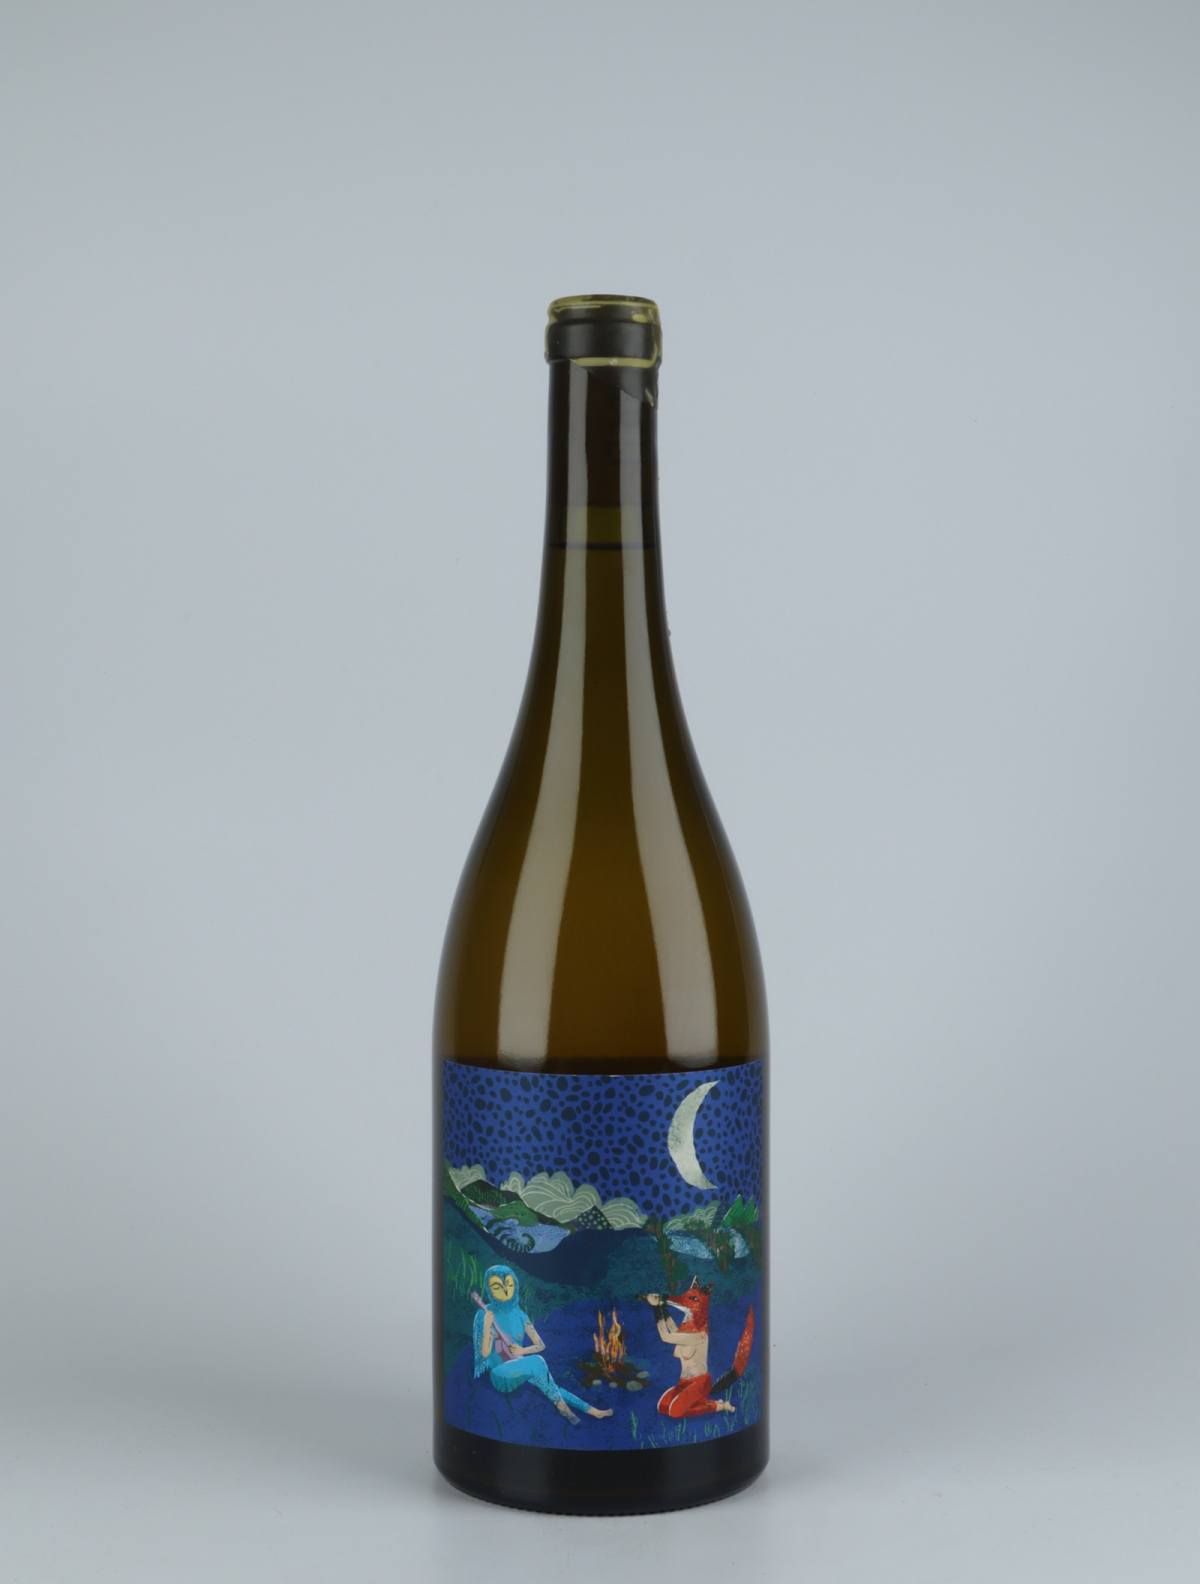 En flaske 2020 Luna Nueva Orange vin fra Kindeli, Nelson i New Zealand